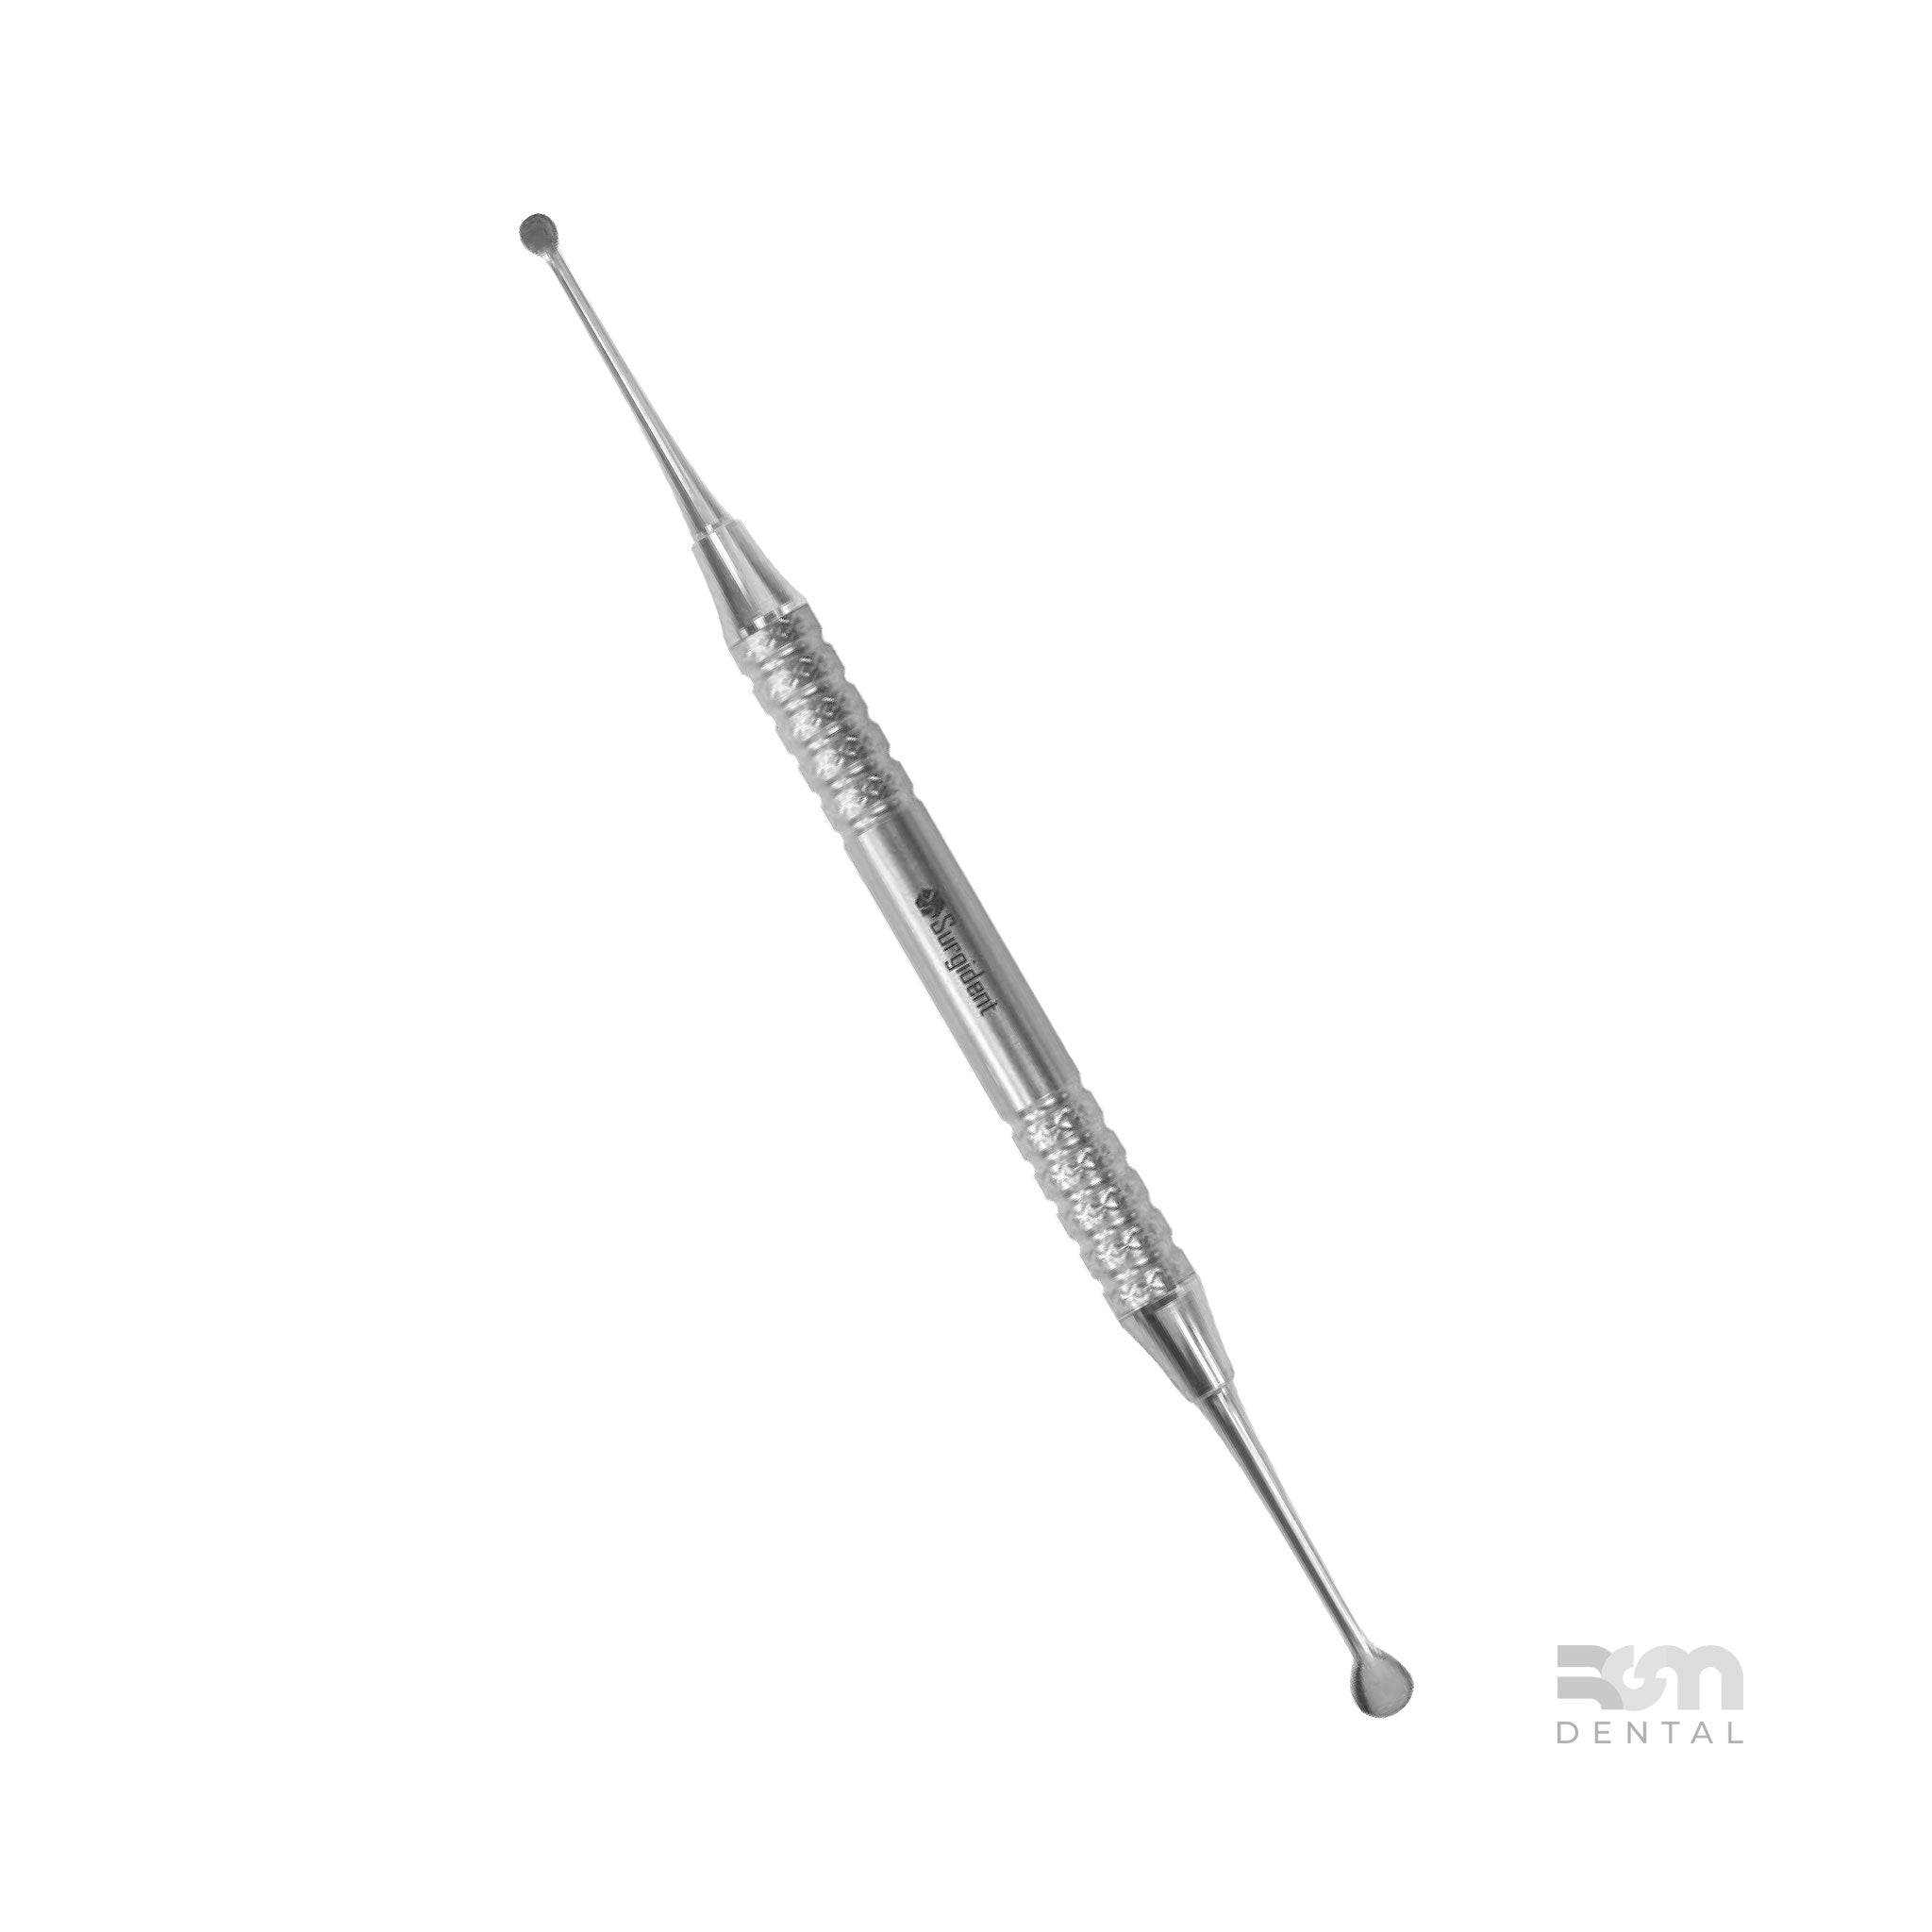 Surgical Curette CM9 : 3.9mm - 6.5mm